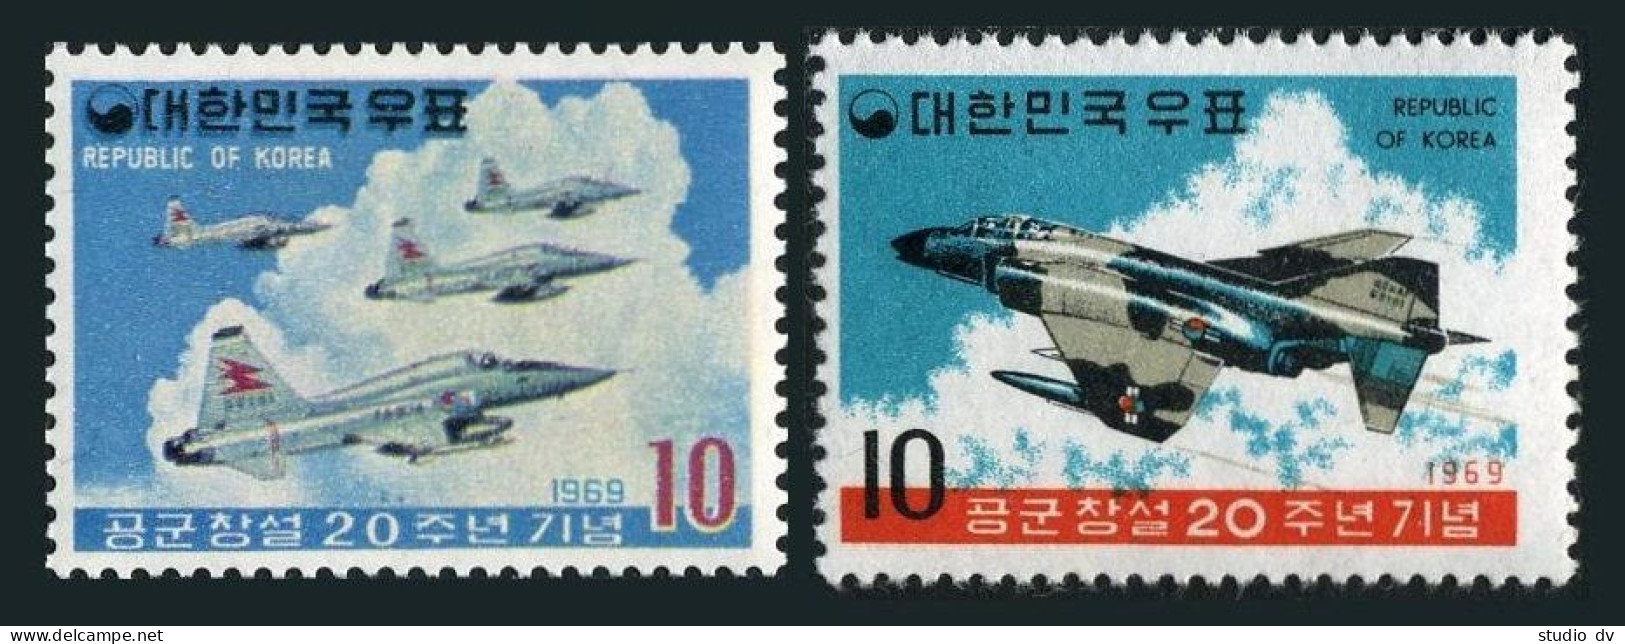 Korea South 686-687,MNH.Michel 675-676. Korean Air Force,20th Ann.1969. - Corée Du Sud